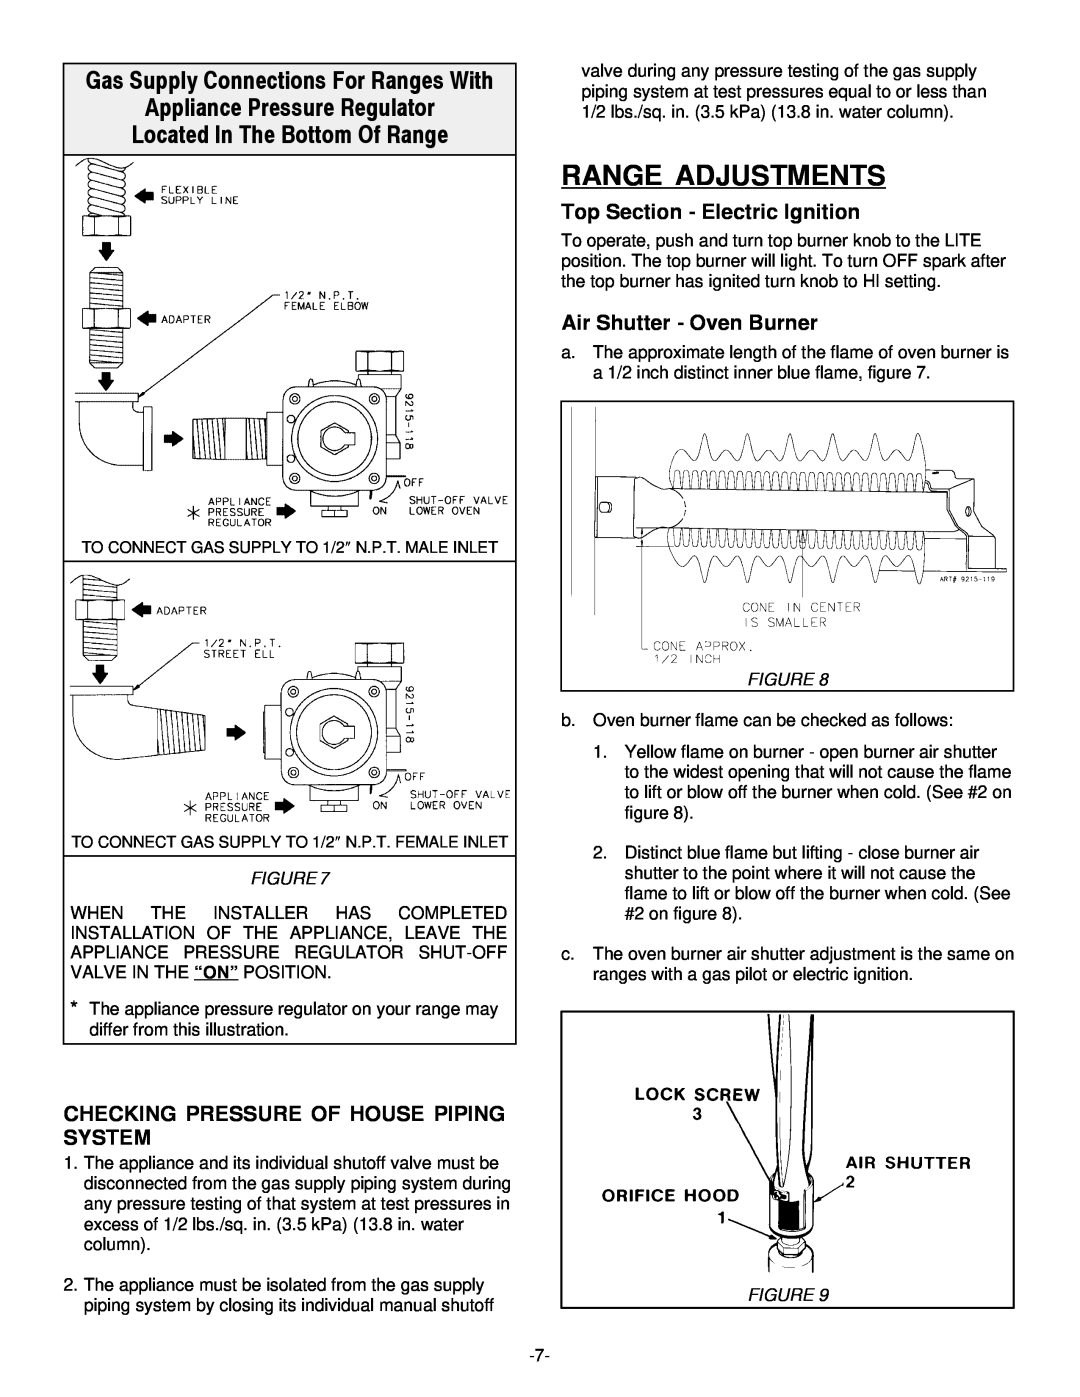 Jenn-Air Range Adjustments, Appliance Pressure Regulator Located In The Bottom Of Range, Air Shutter - Oven Burner 